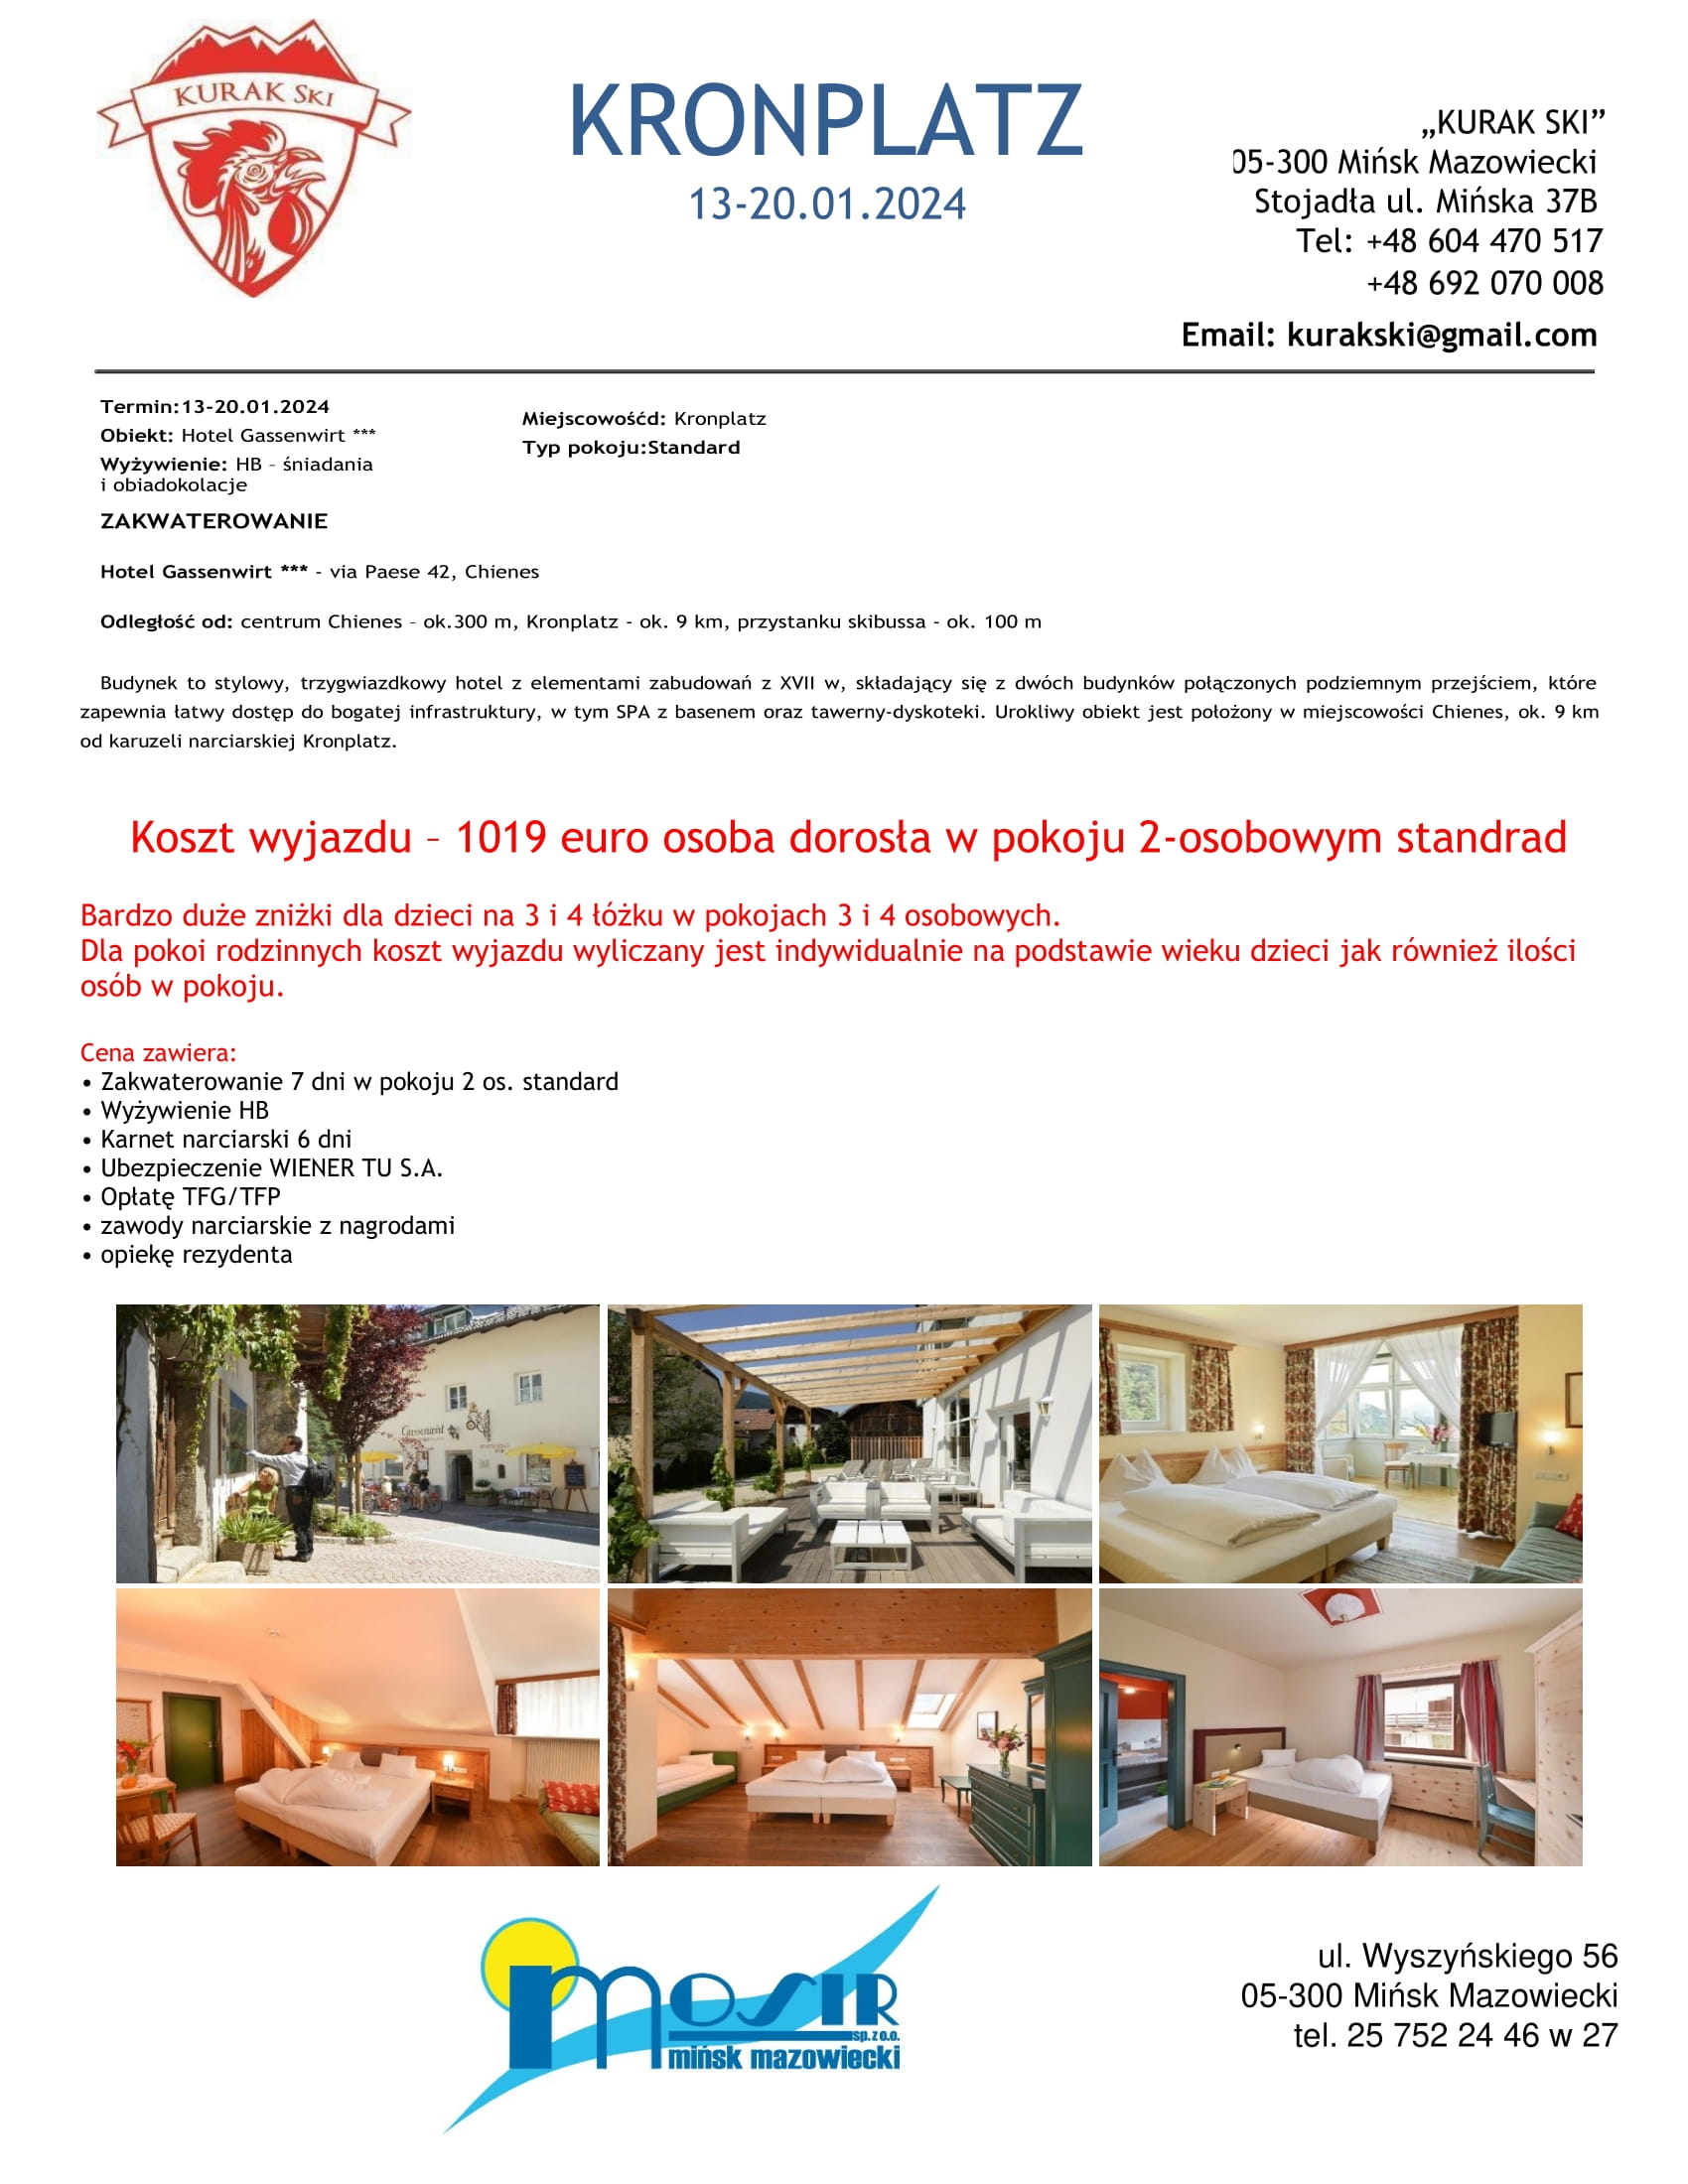 Wycieczka do Włoch 13-20.12.2024 Hotel Gassenwirt Chienes cena za osobę 1019 euro